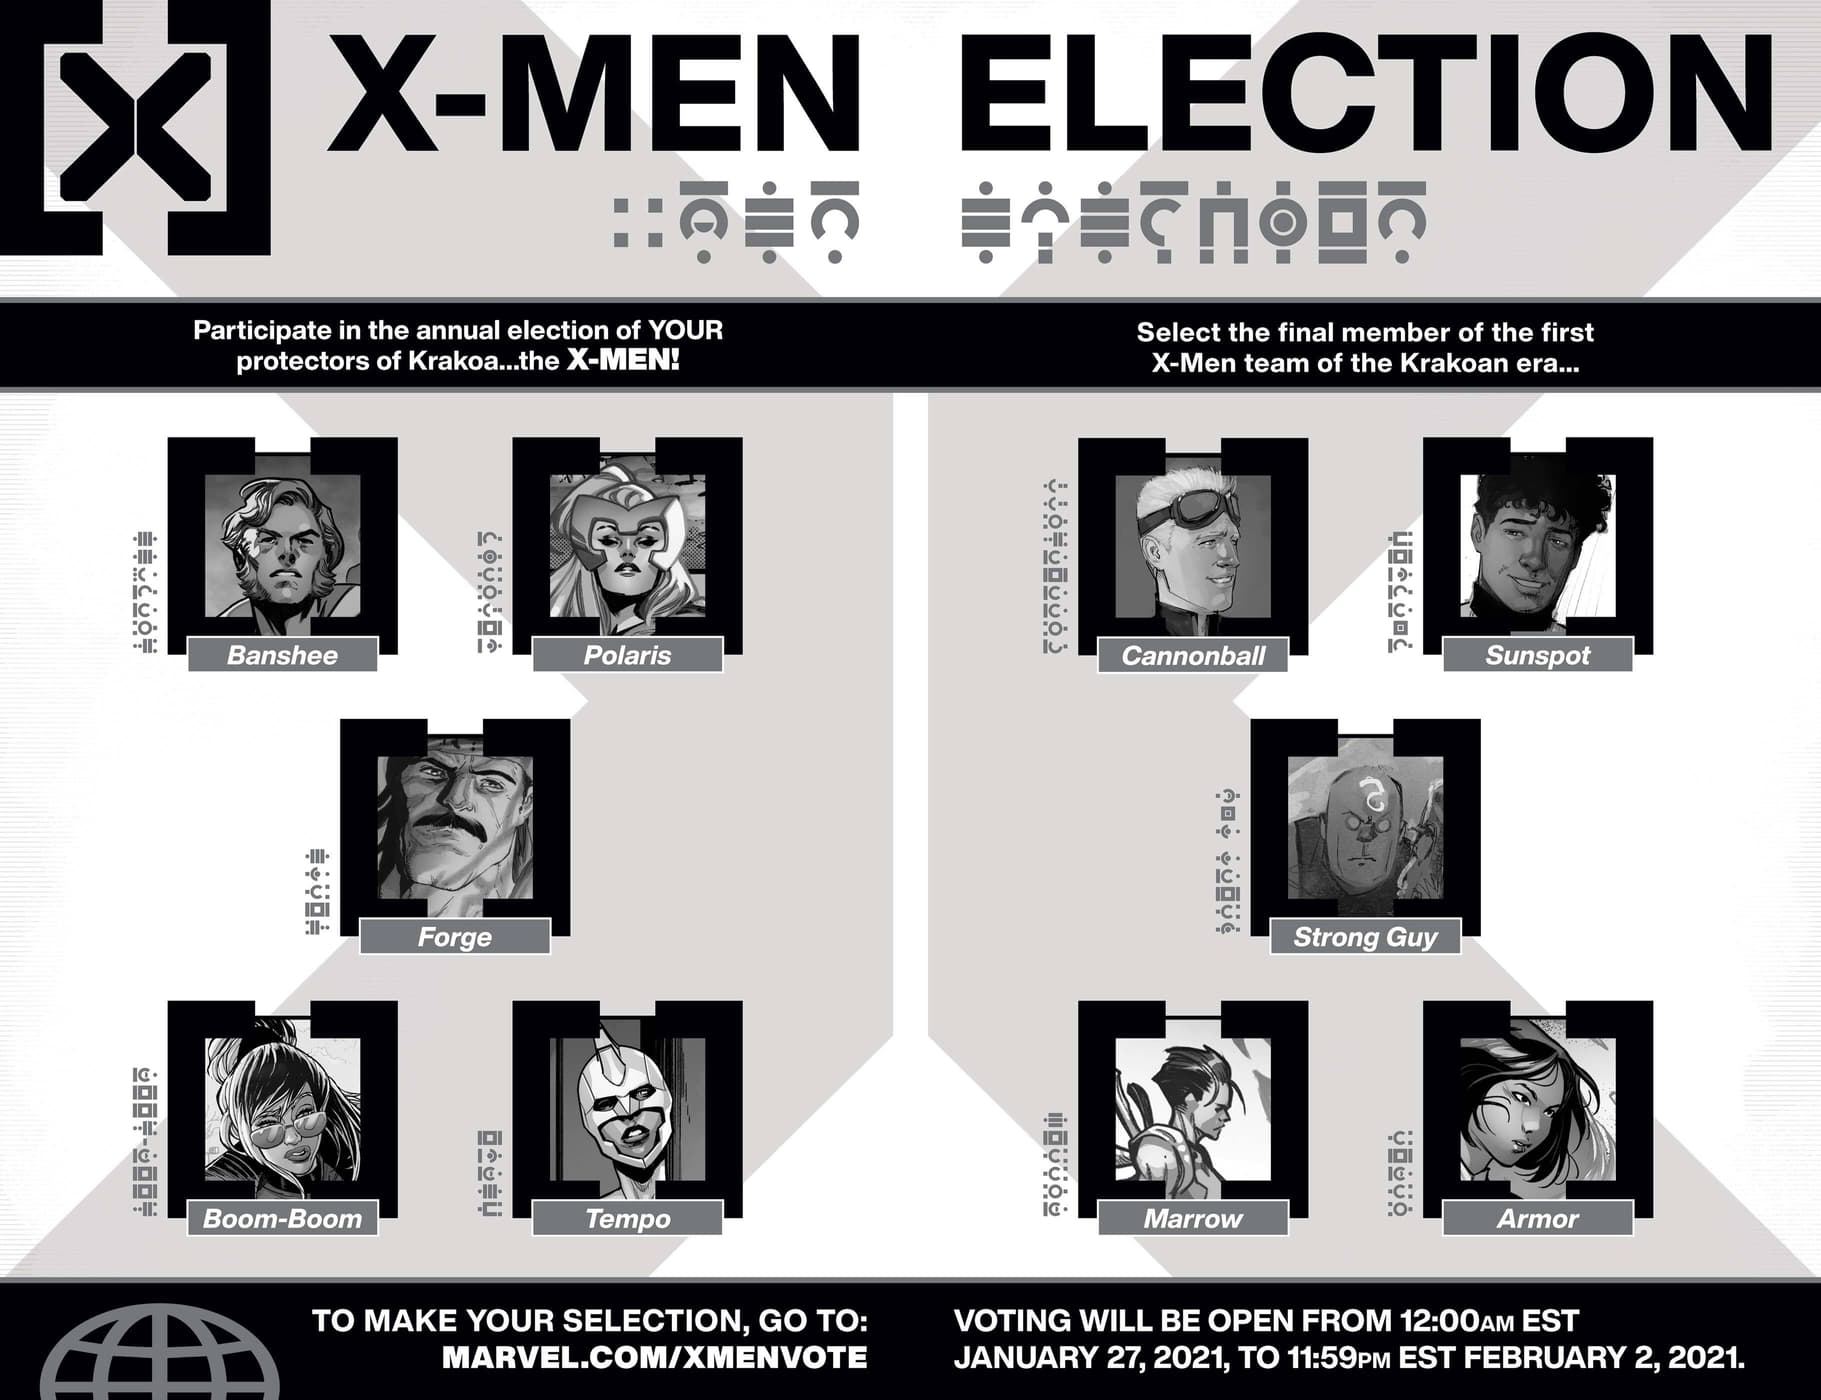 X-Men election